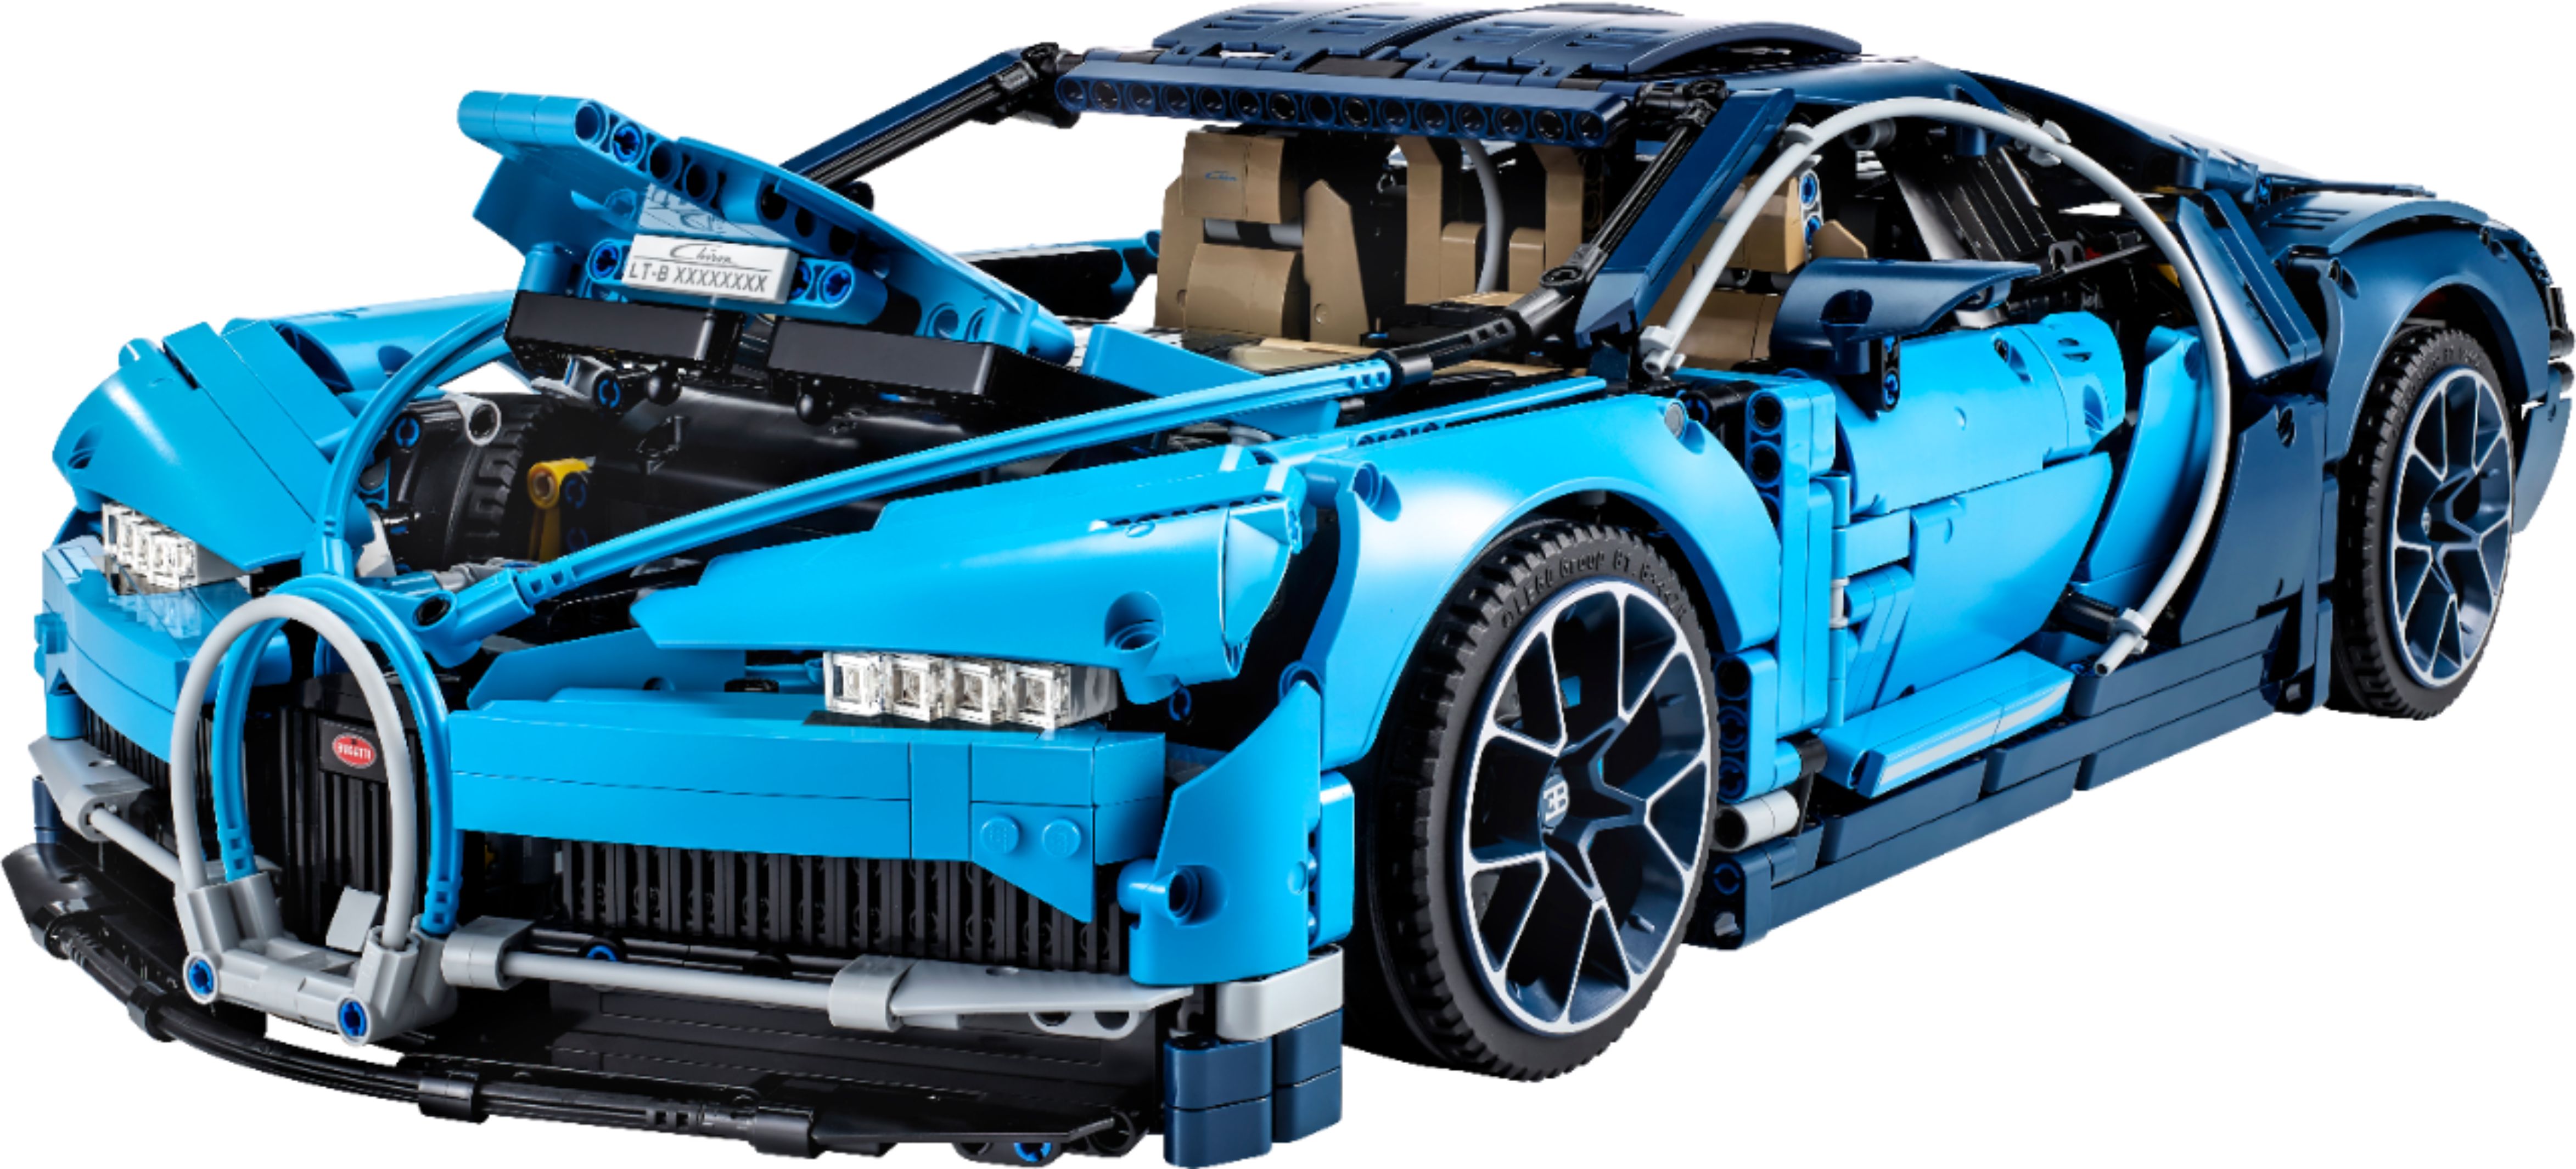 for sale online LEGO Bugatti Chiron Technic 42083 